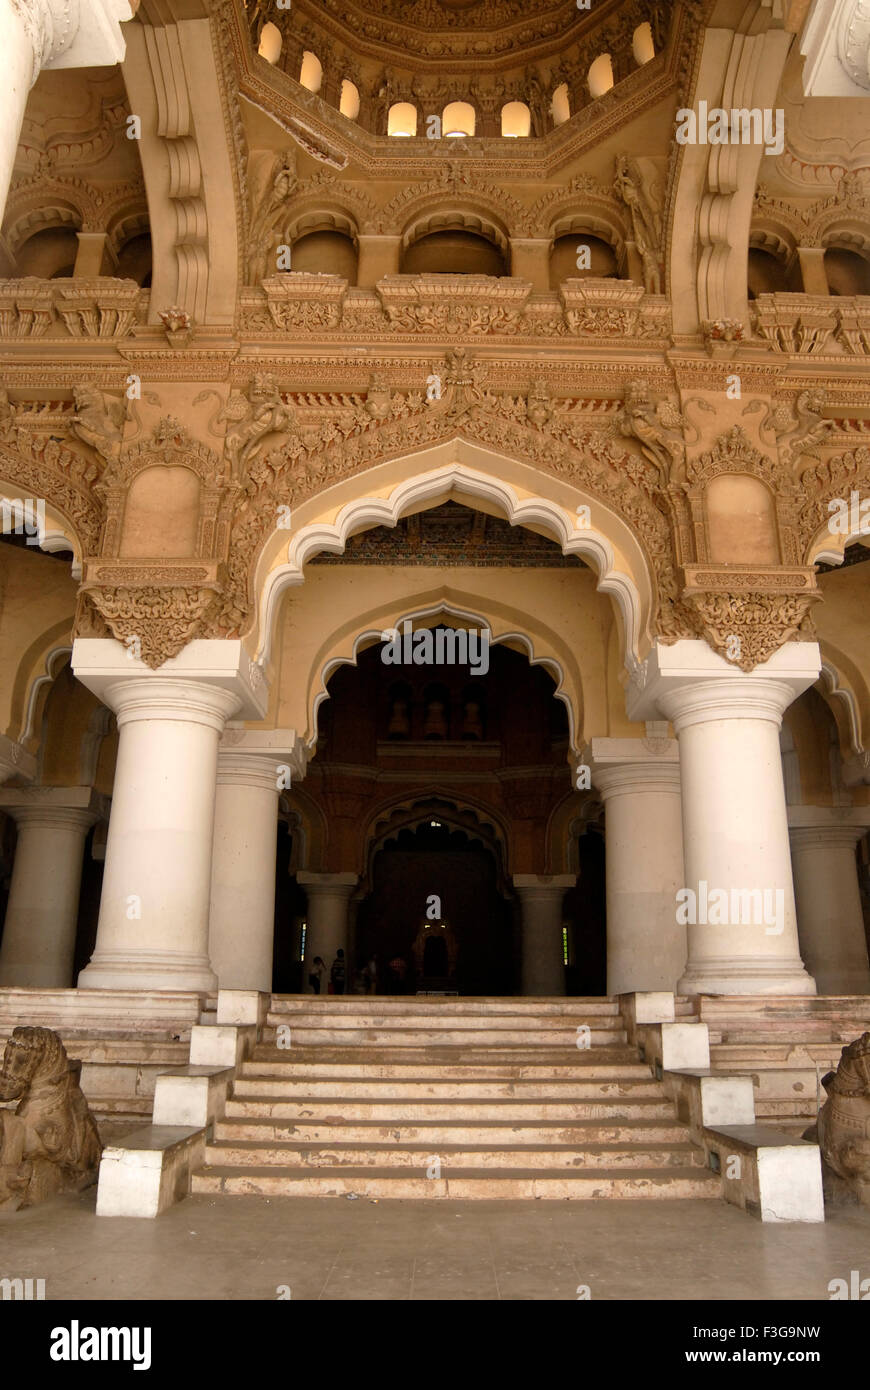 Schritte und riesigen Säulen am Eingang der Haupthalle Thirumalai Nayak Palast Indo-sarazenischen Stil in Madurai; Tamil Nadu Stockfoto